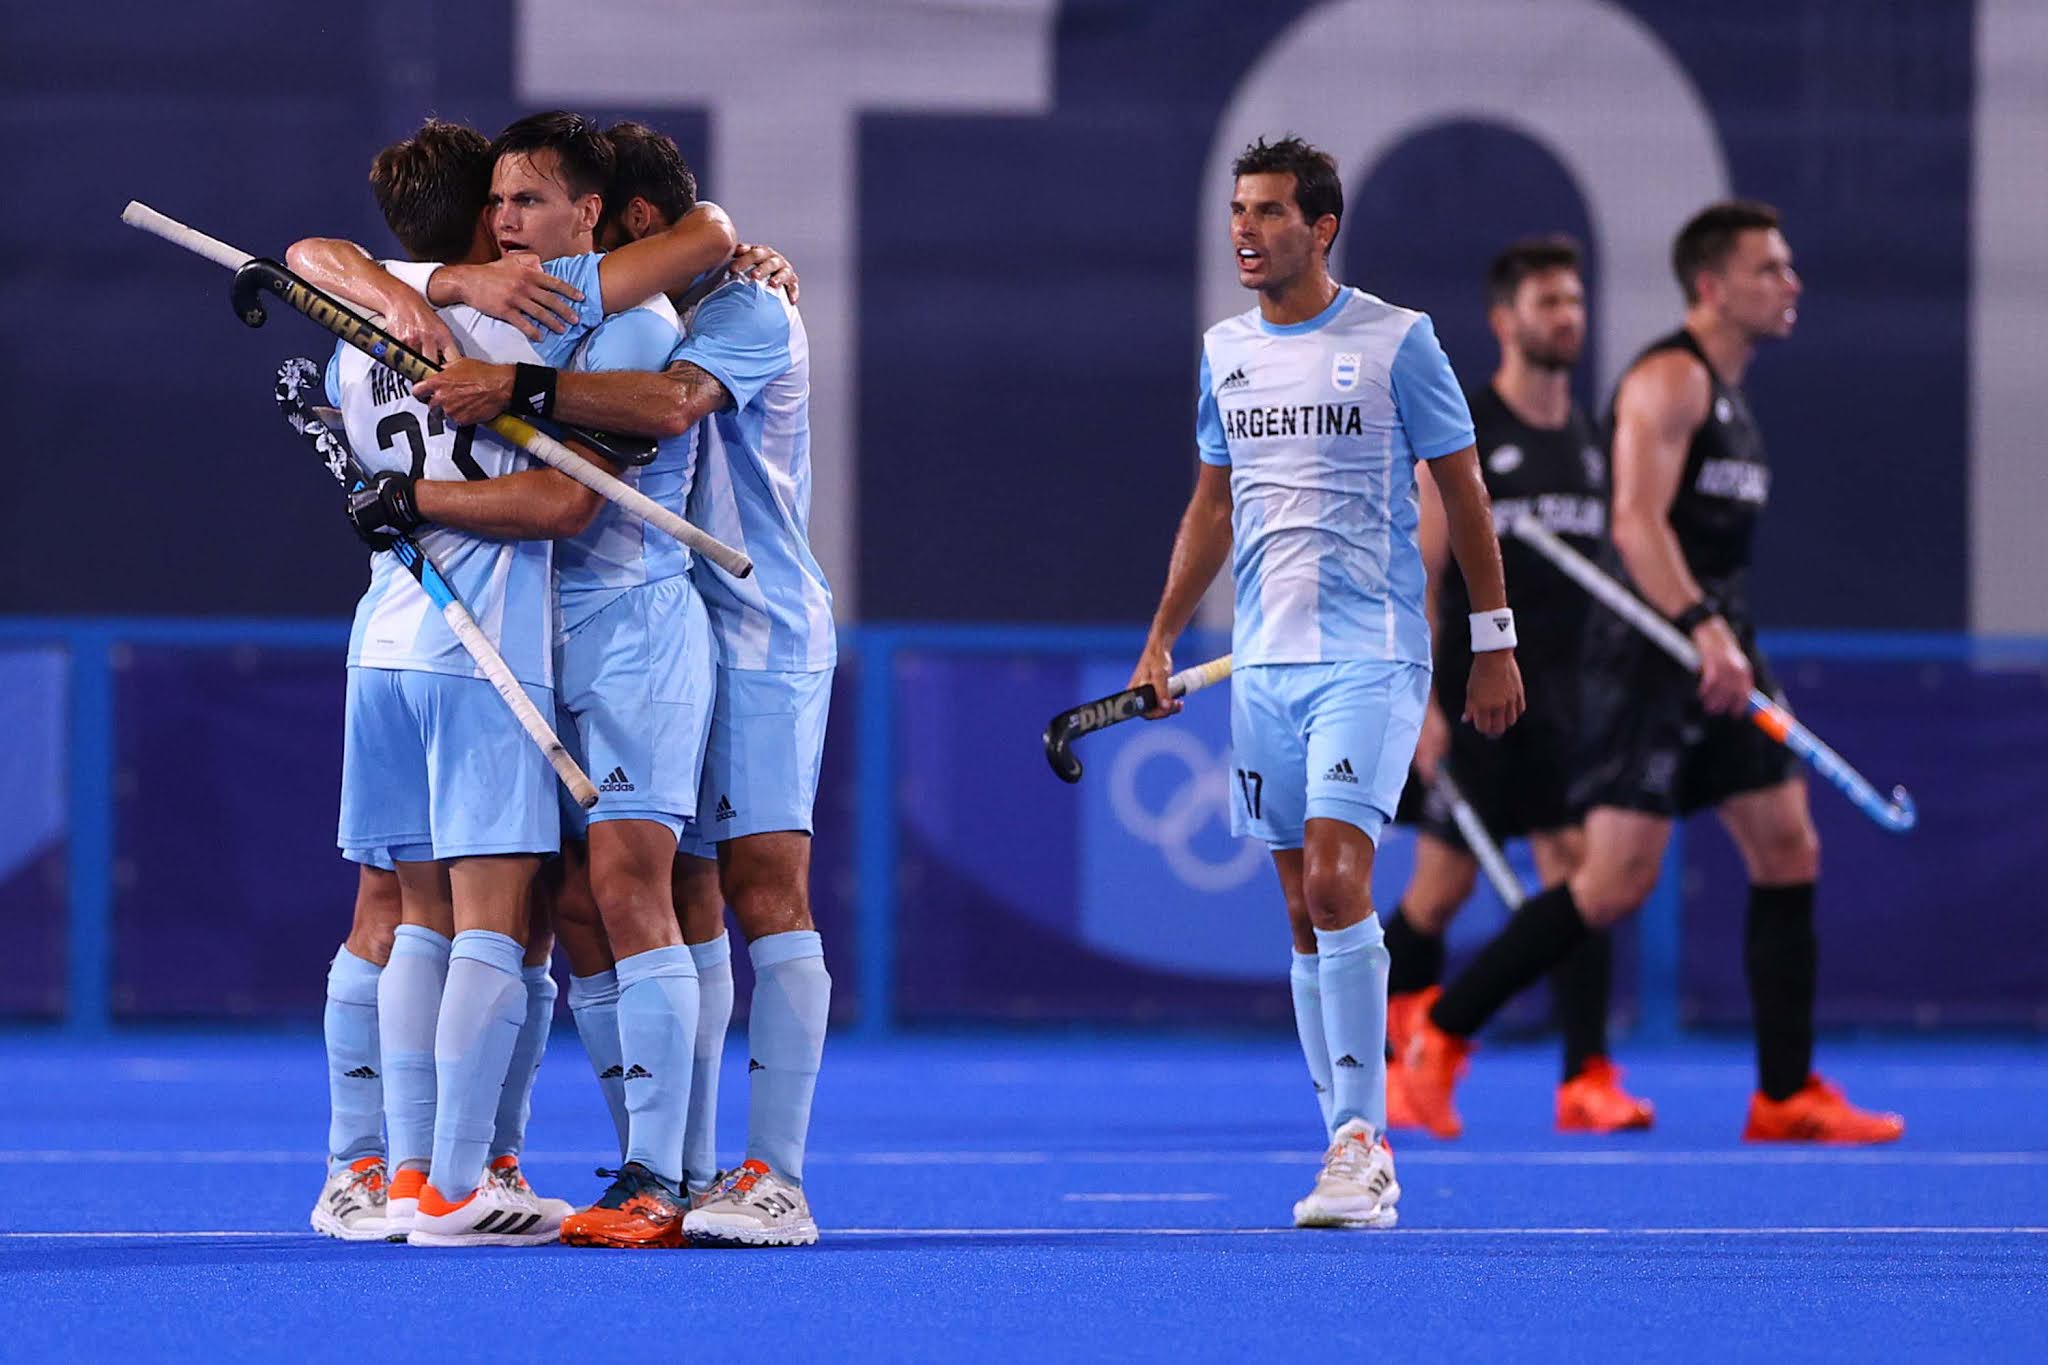 El seleccionado argentino de hockey venció hoy a Nueva Zelanda por 4 a 1 y se ubicó tercero en el Grupo A, clasificando para los cuartos de final en Tokio